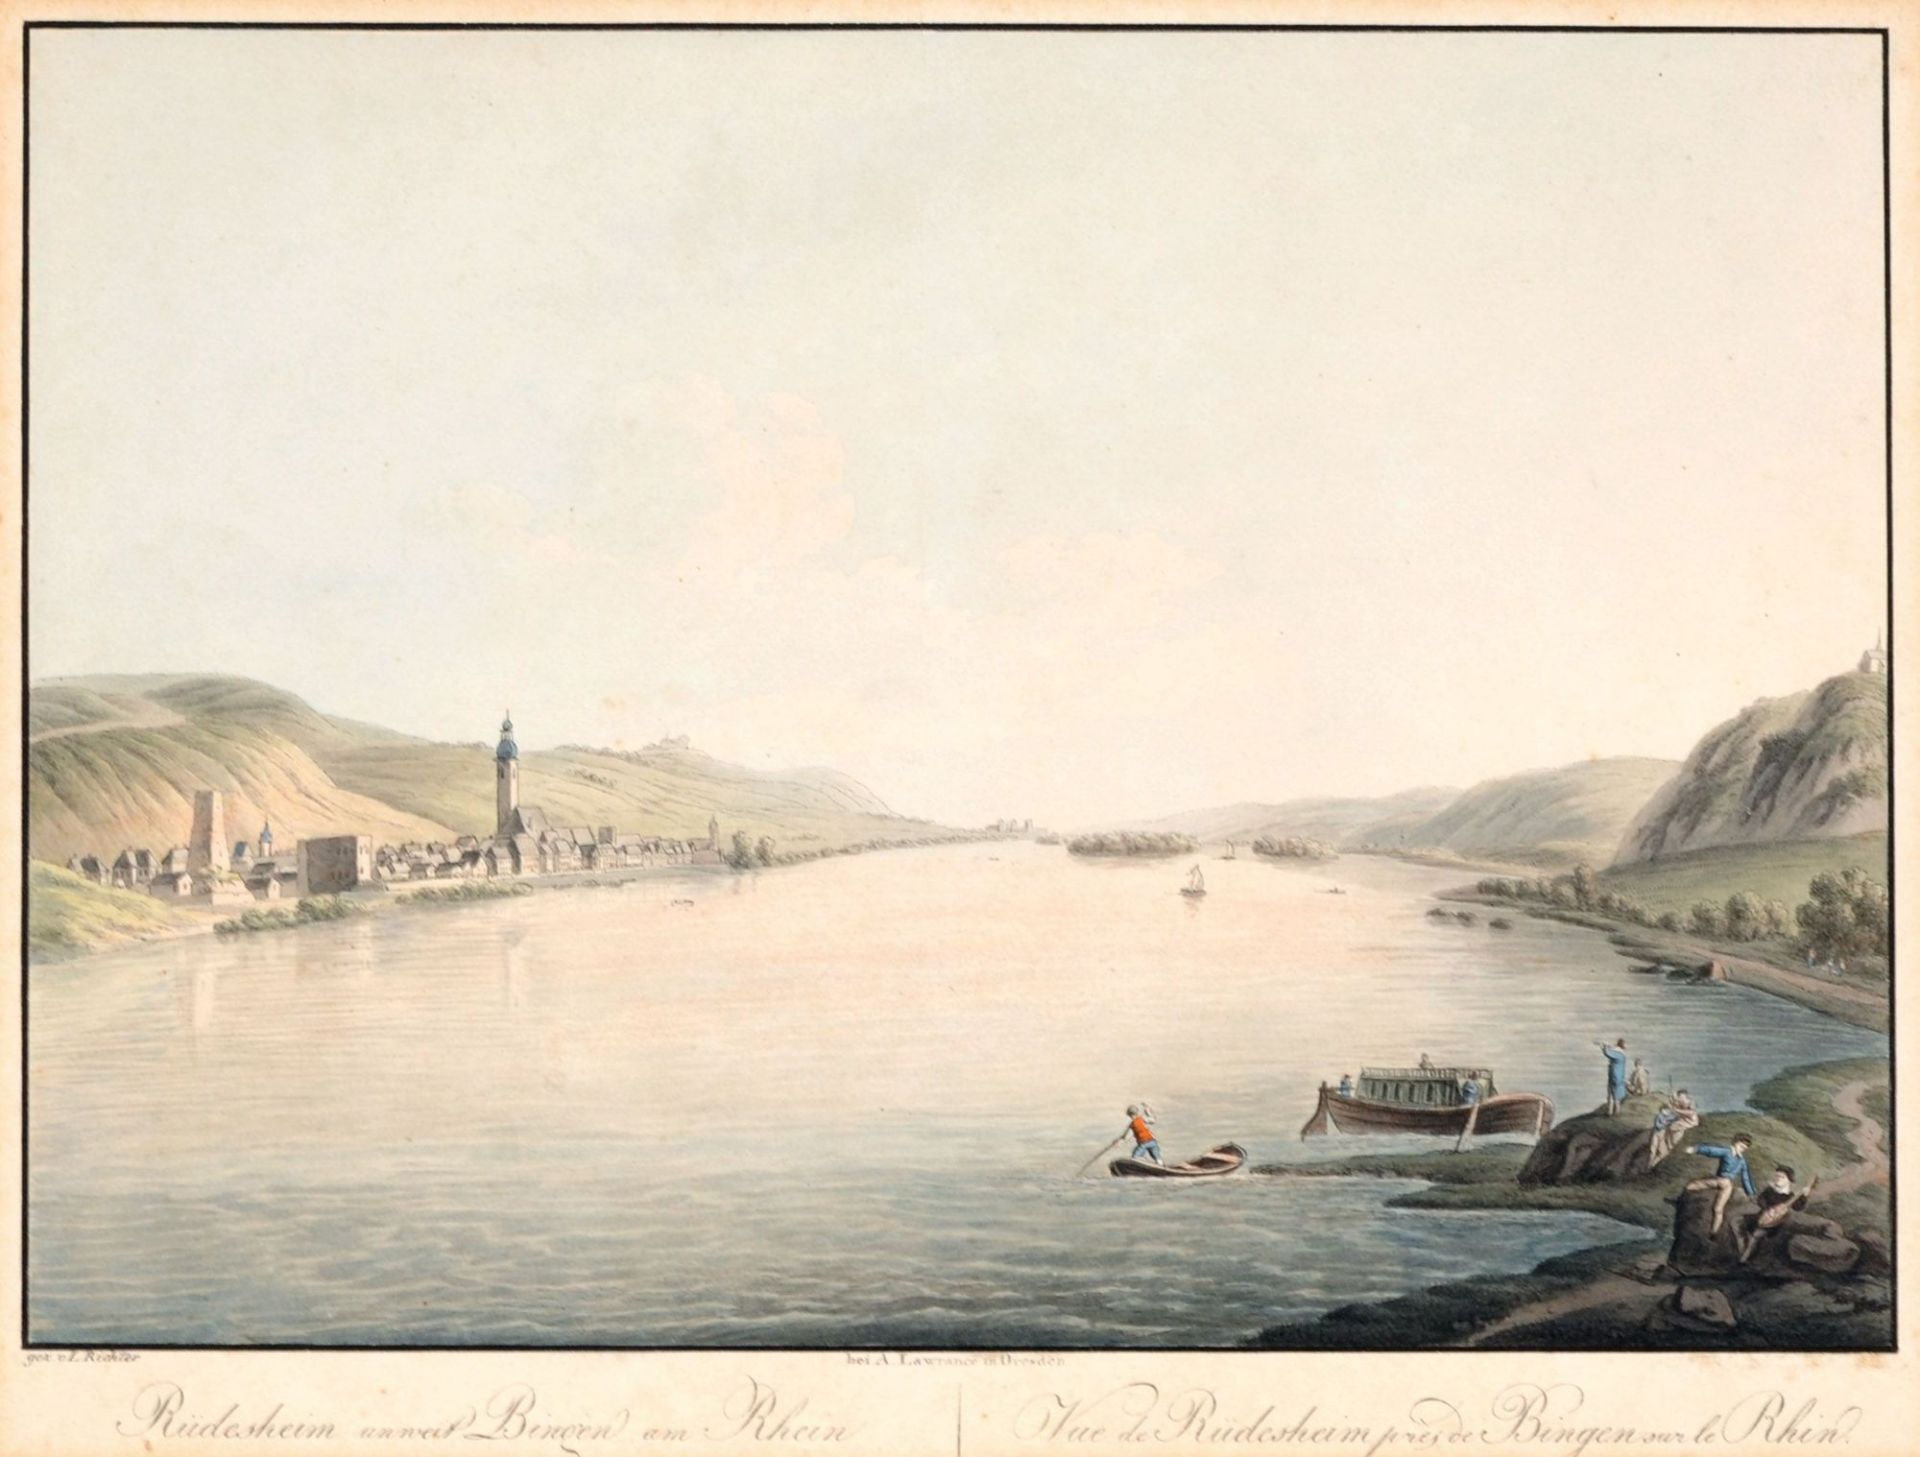 Adrian Ludwig Richter "Rüdesheim unweit Bingen am Rhein". Um 1818.